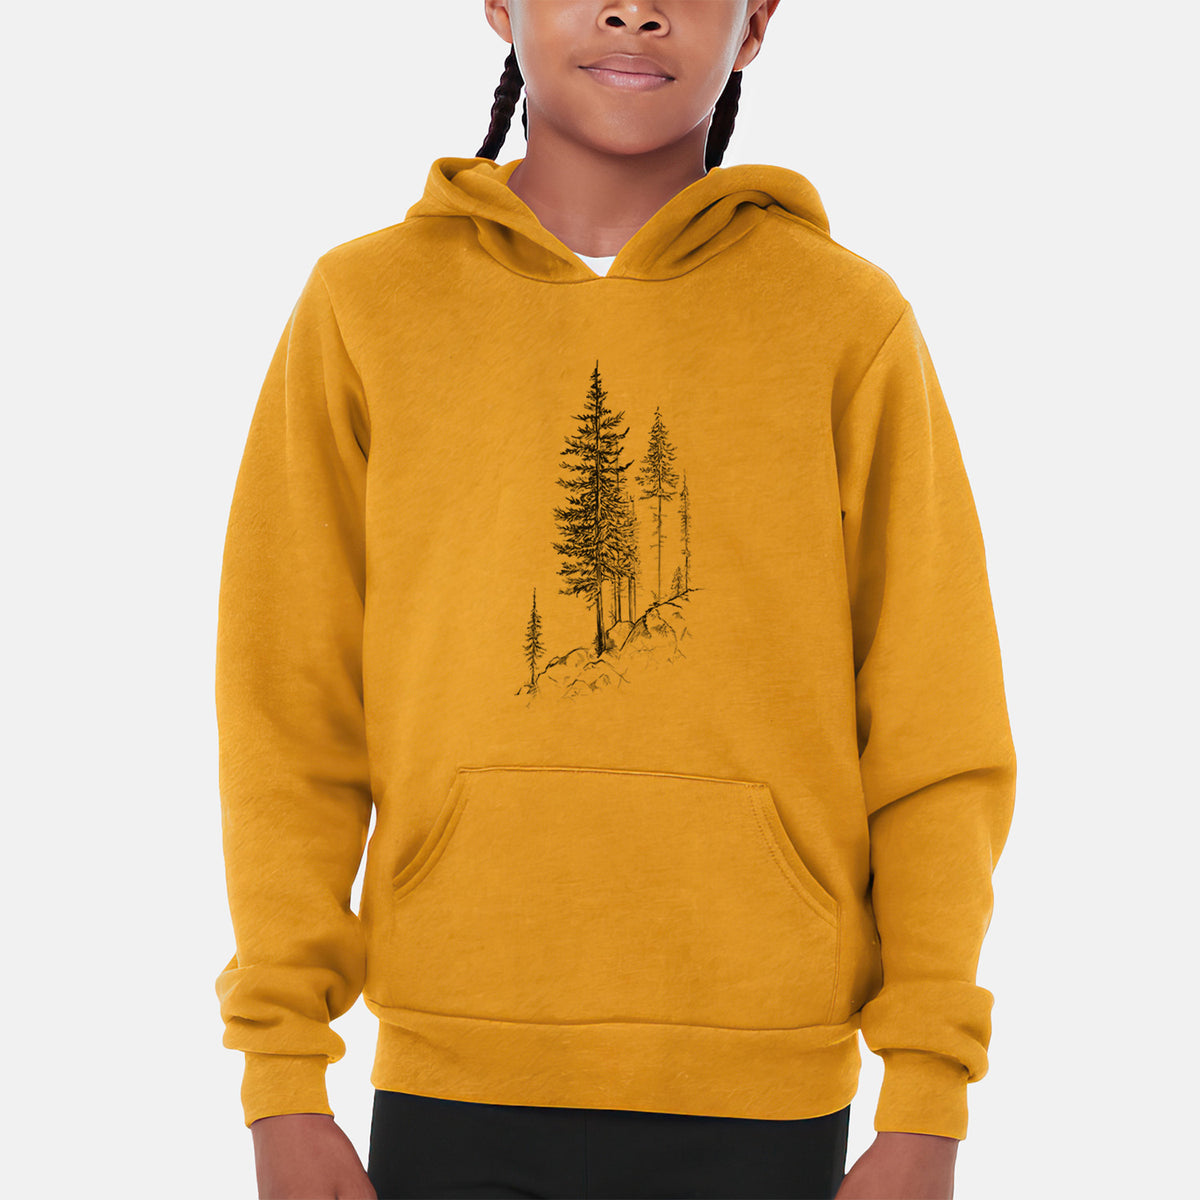 Cliffside Pines - Youth Hoodie Sweatshirt